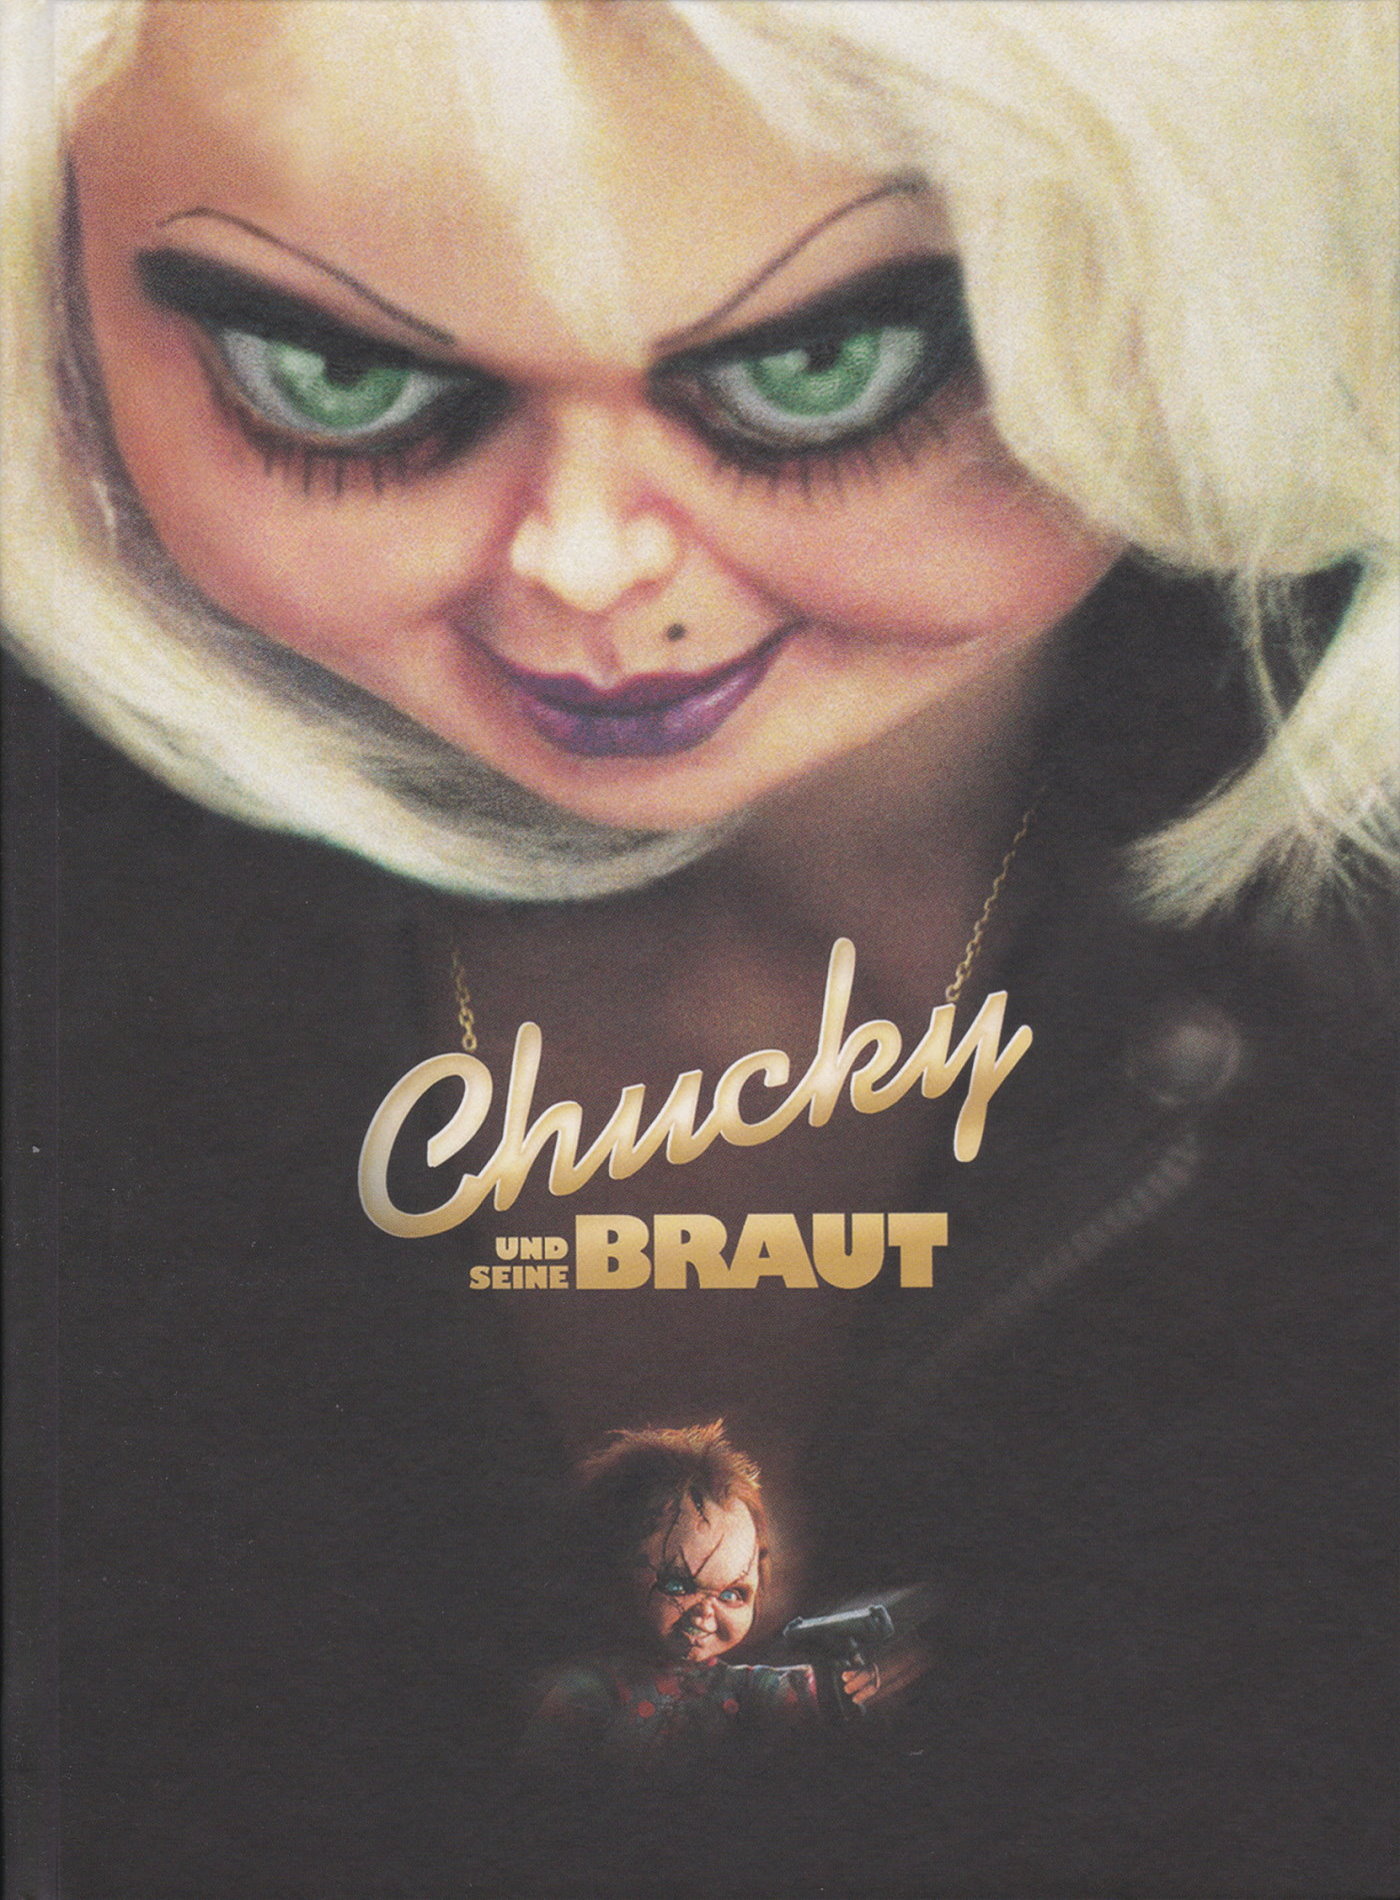 Cover - Chucky und seine Braut.jpg